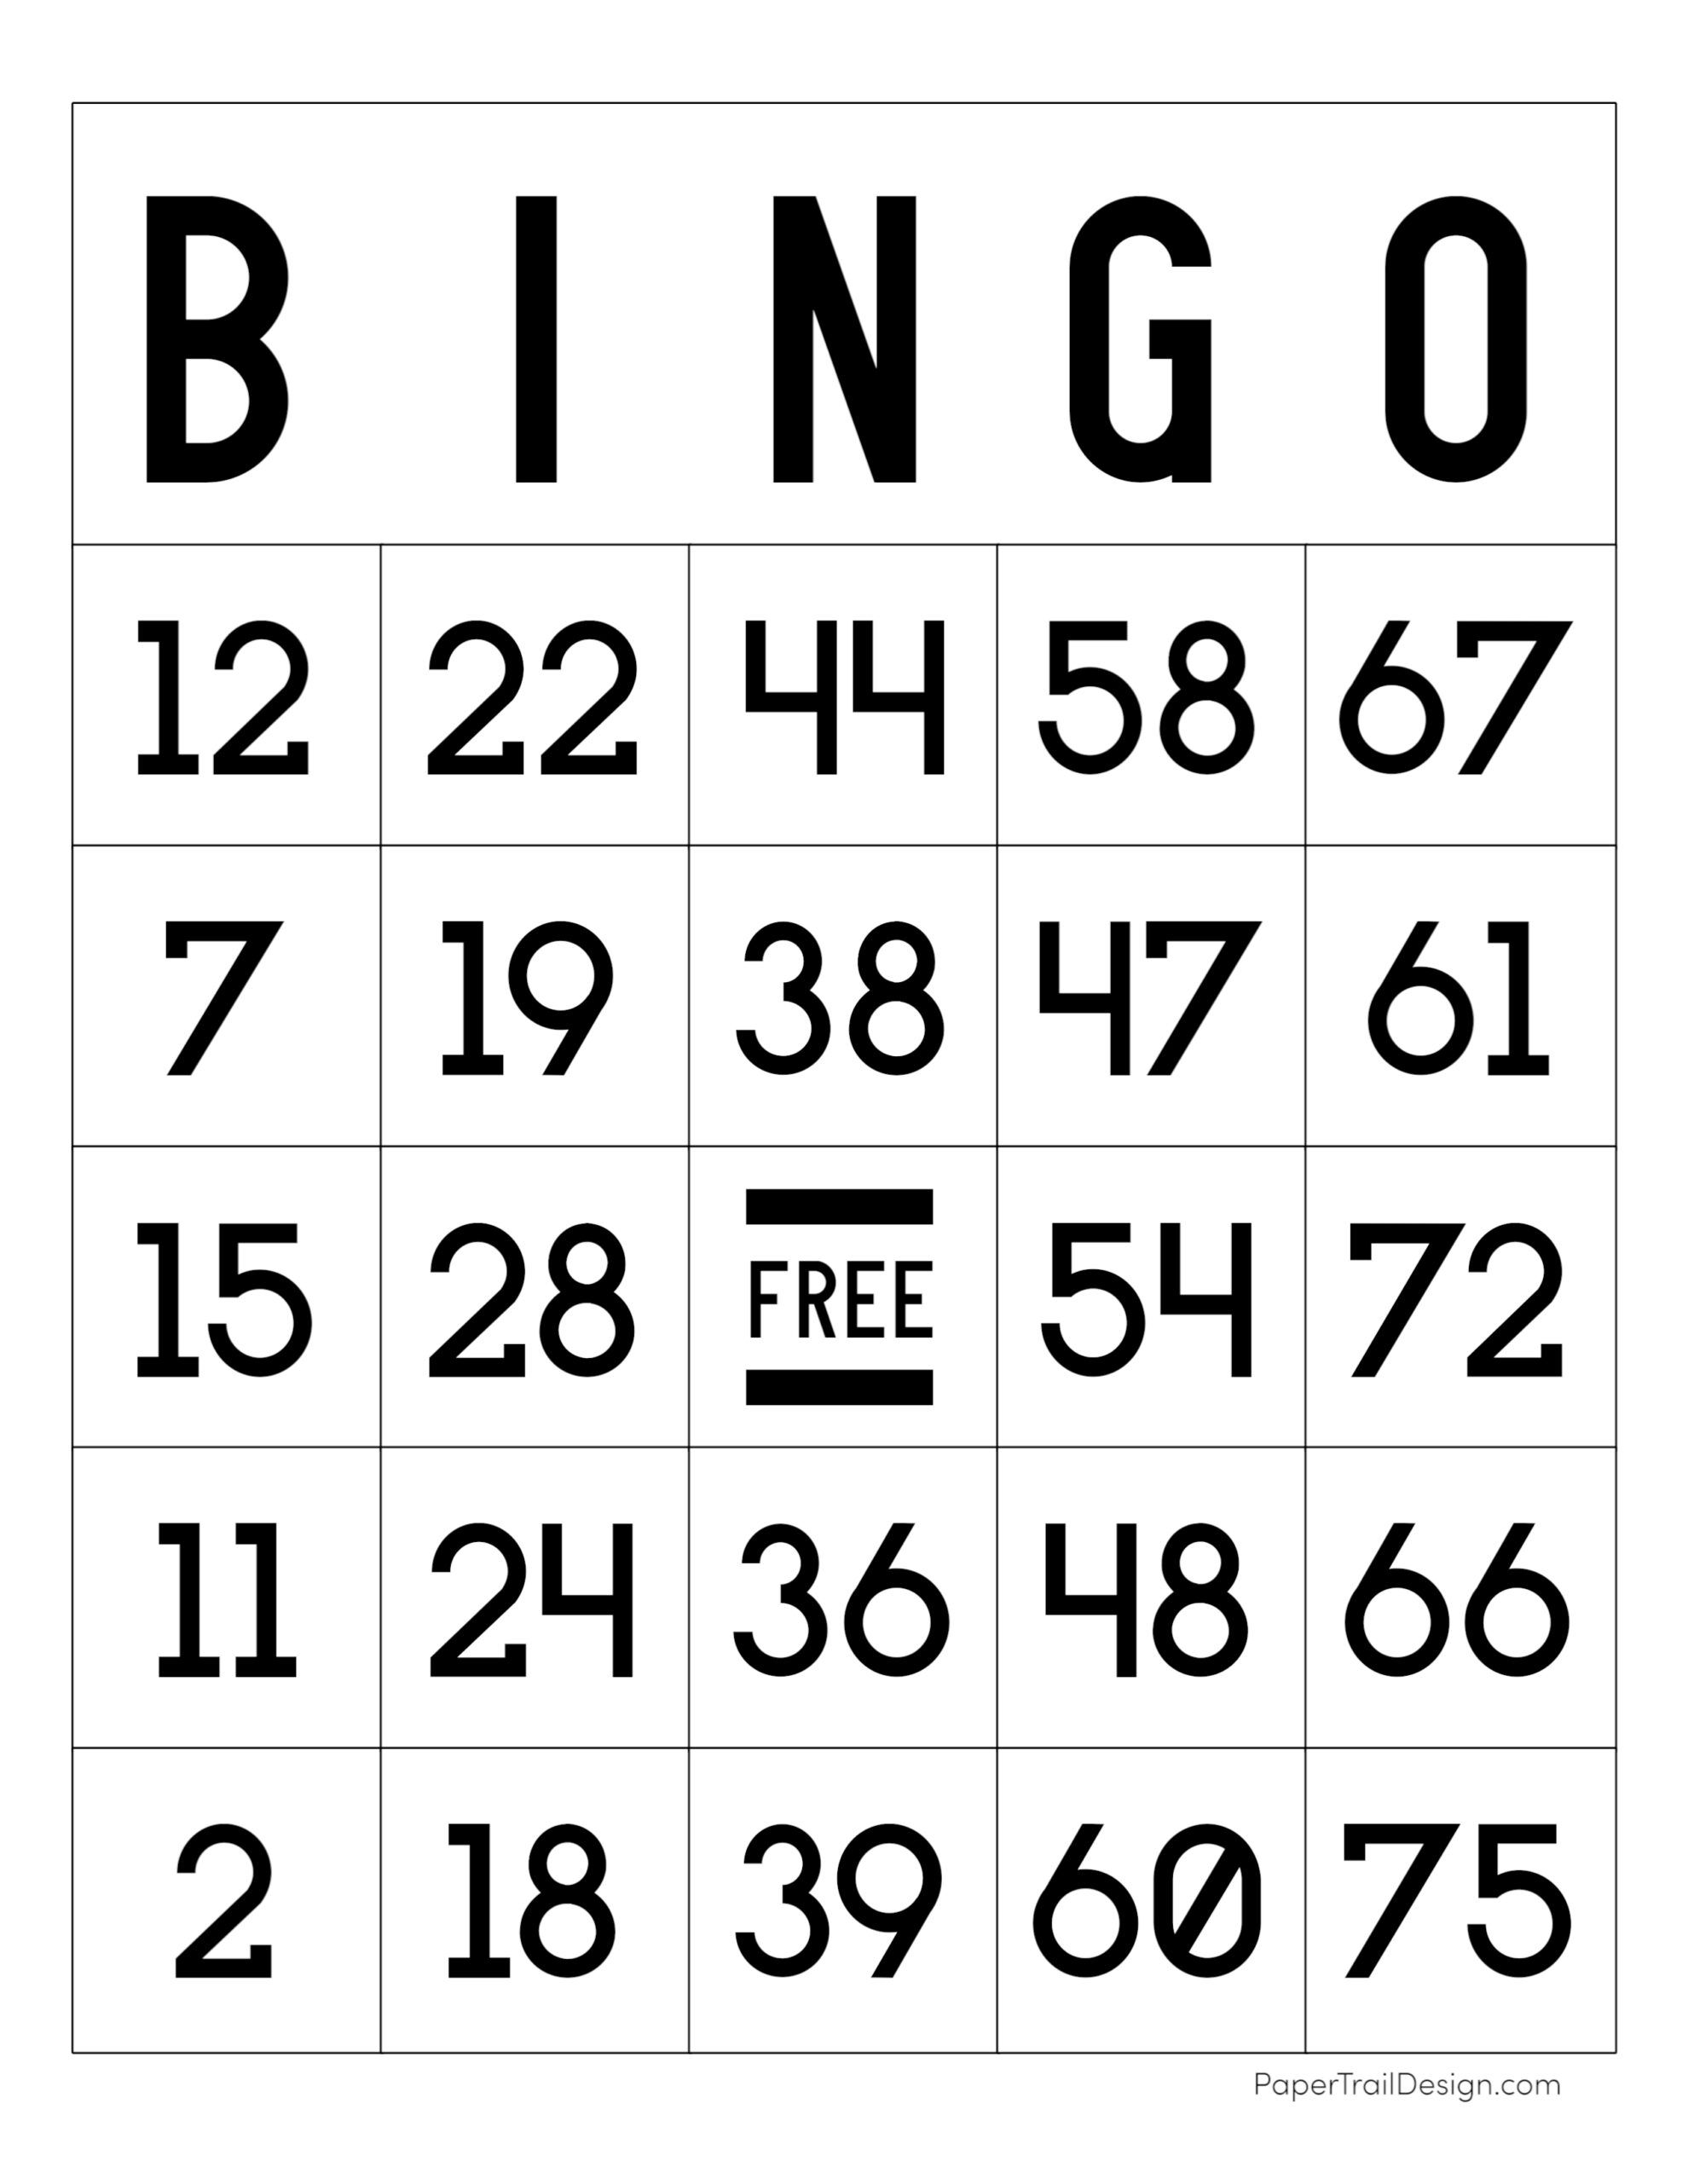 printable-bingo-cards-1-90-bingocardprintout